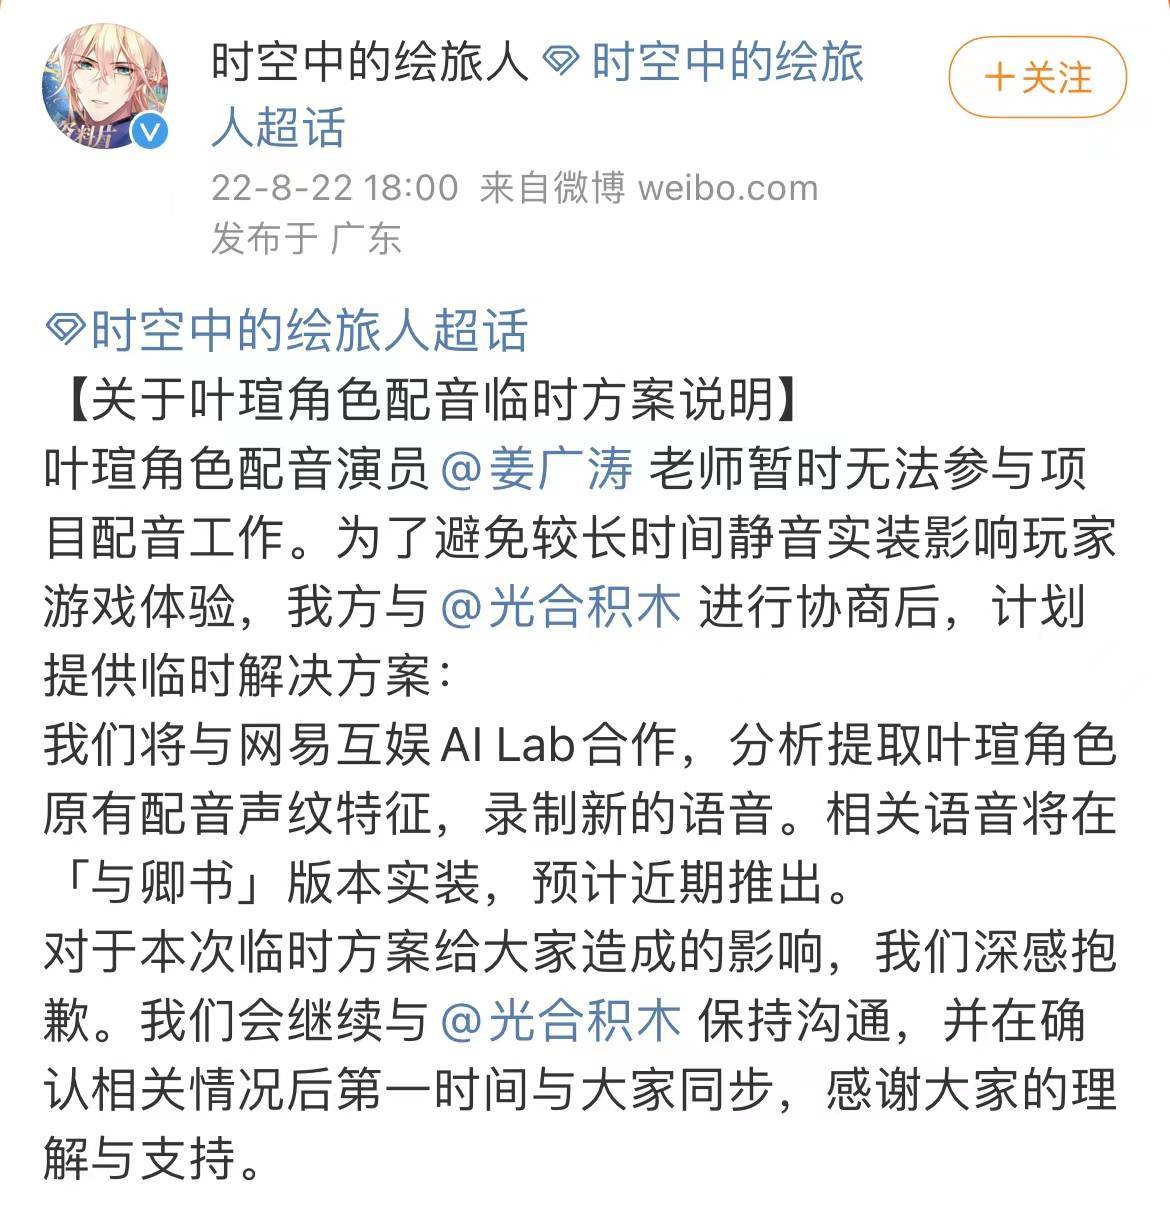 游戏《时空中的绘旅人》 发布公告：姜广涛暂时无法参与项目配音工作